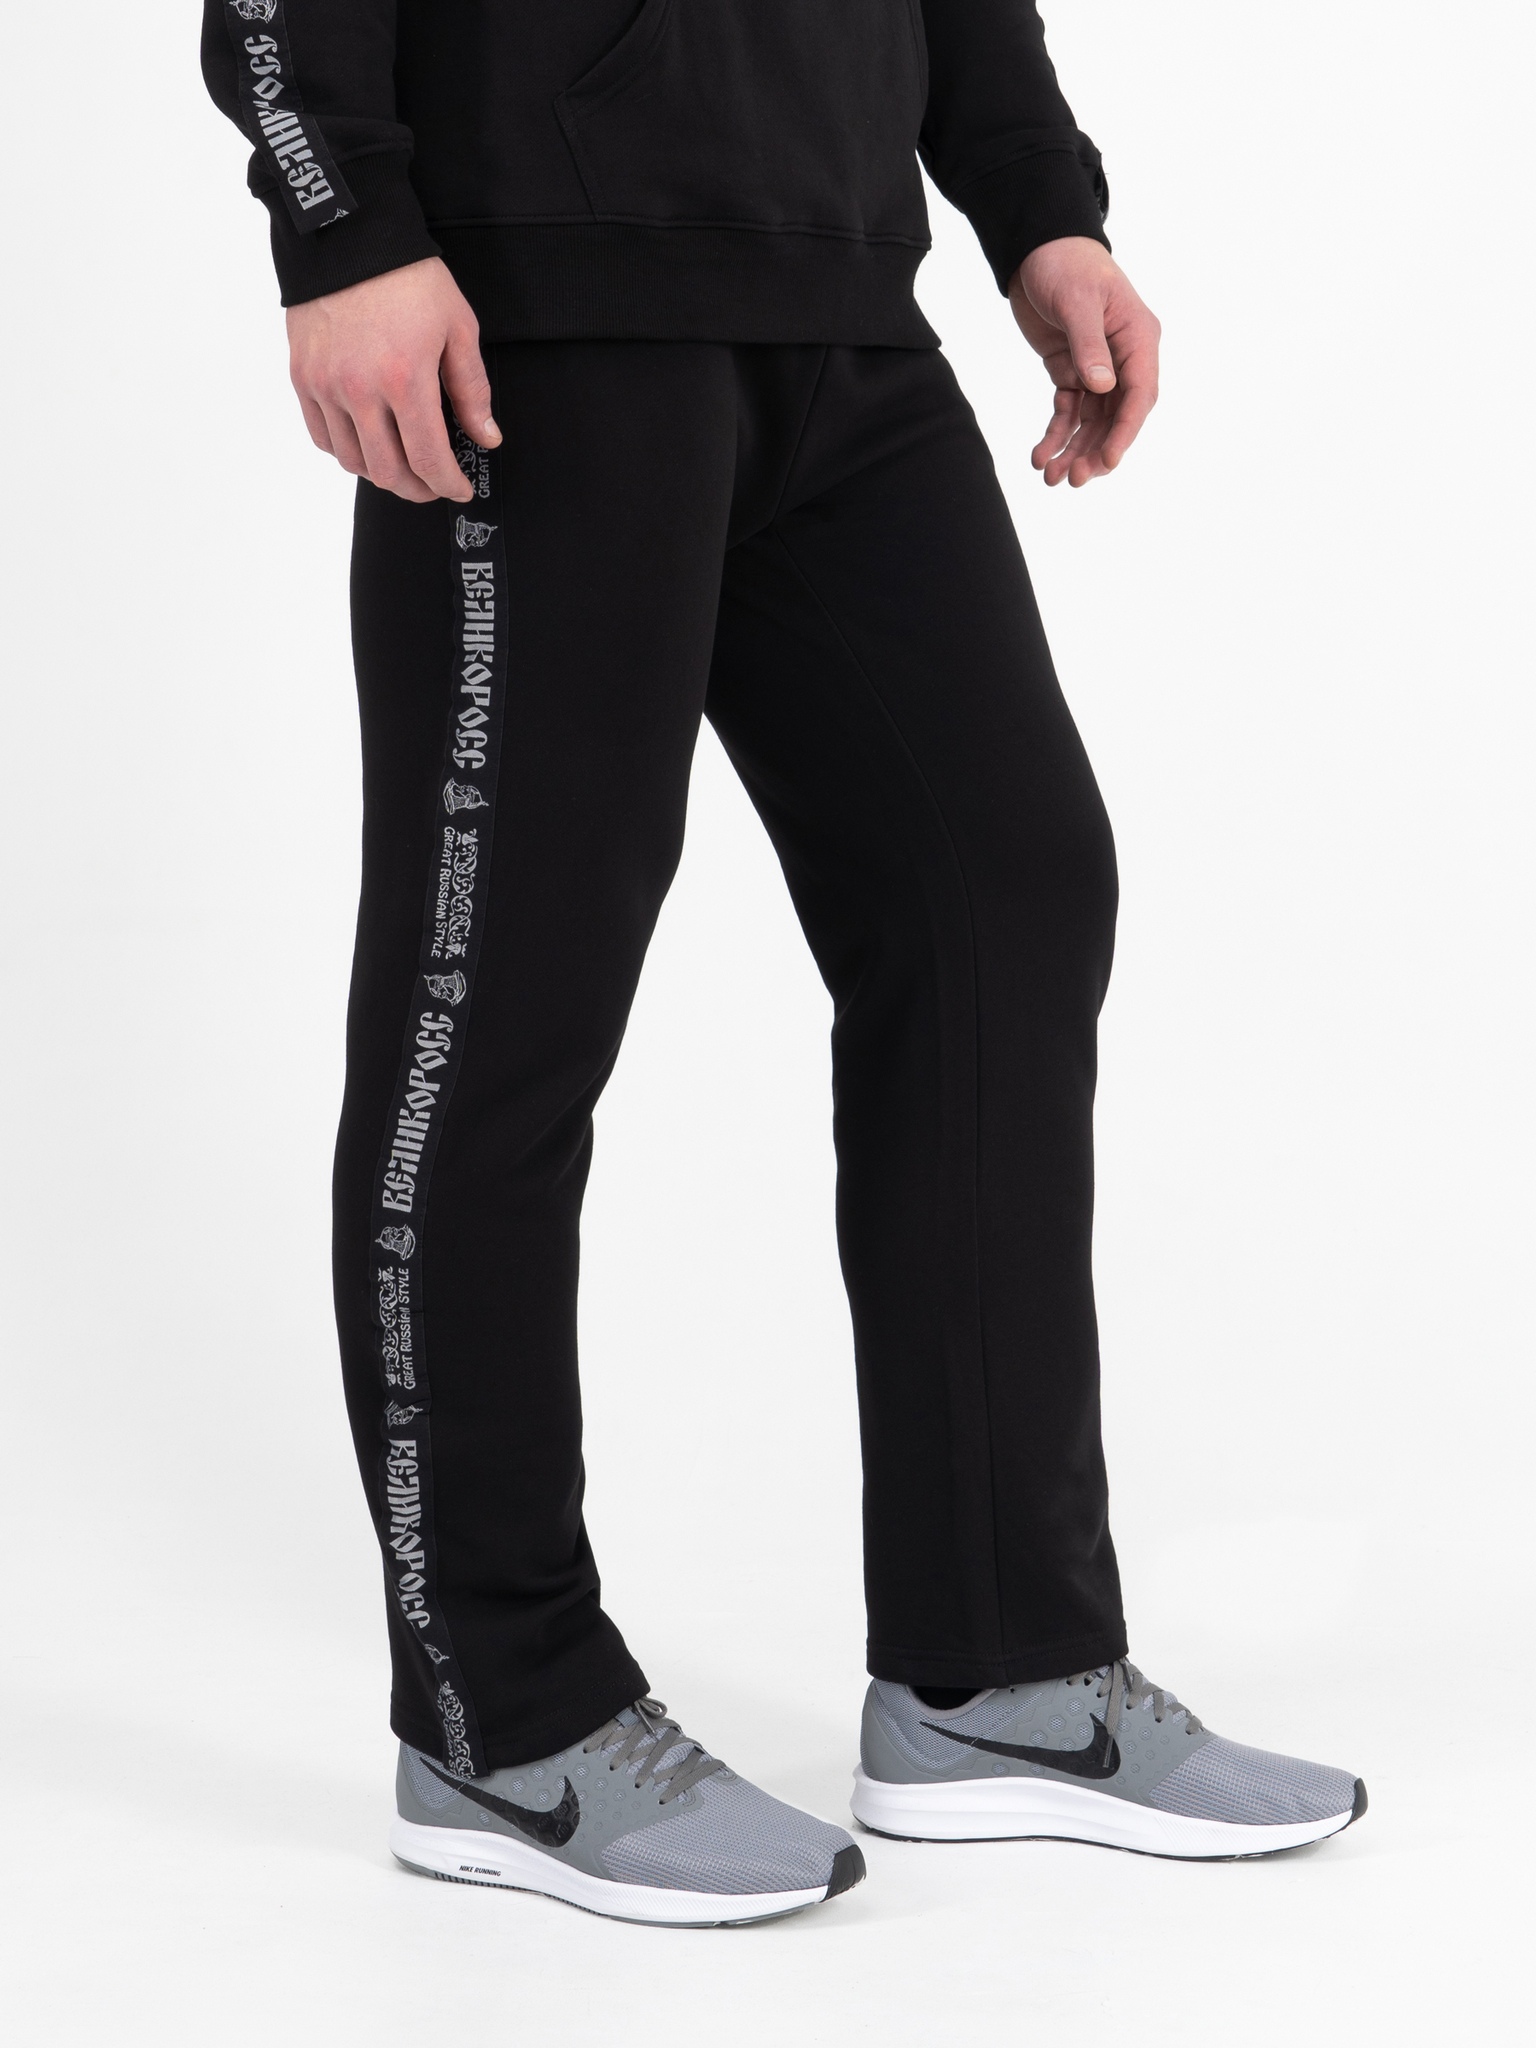 Спортивные брюки мужские Великоросс BM черные 46 RU